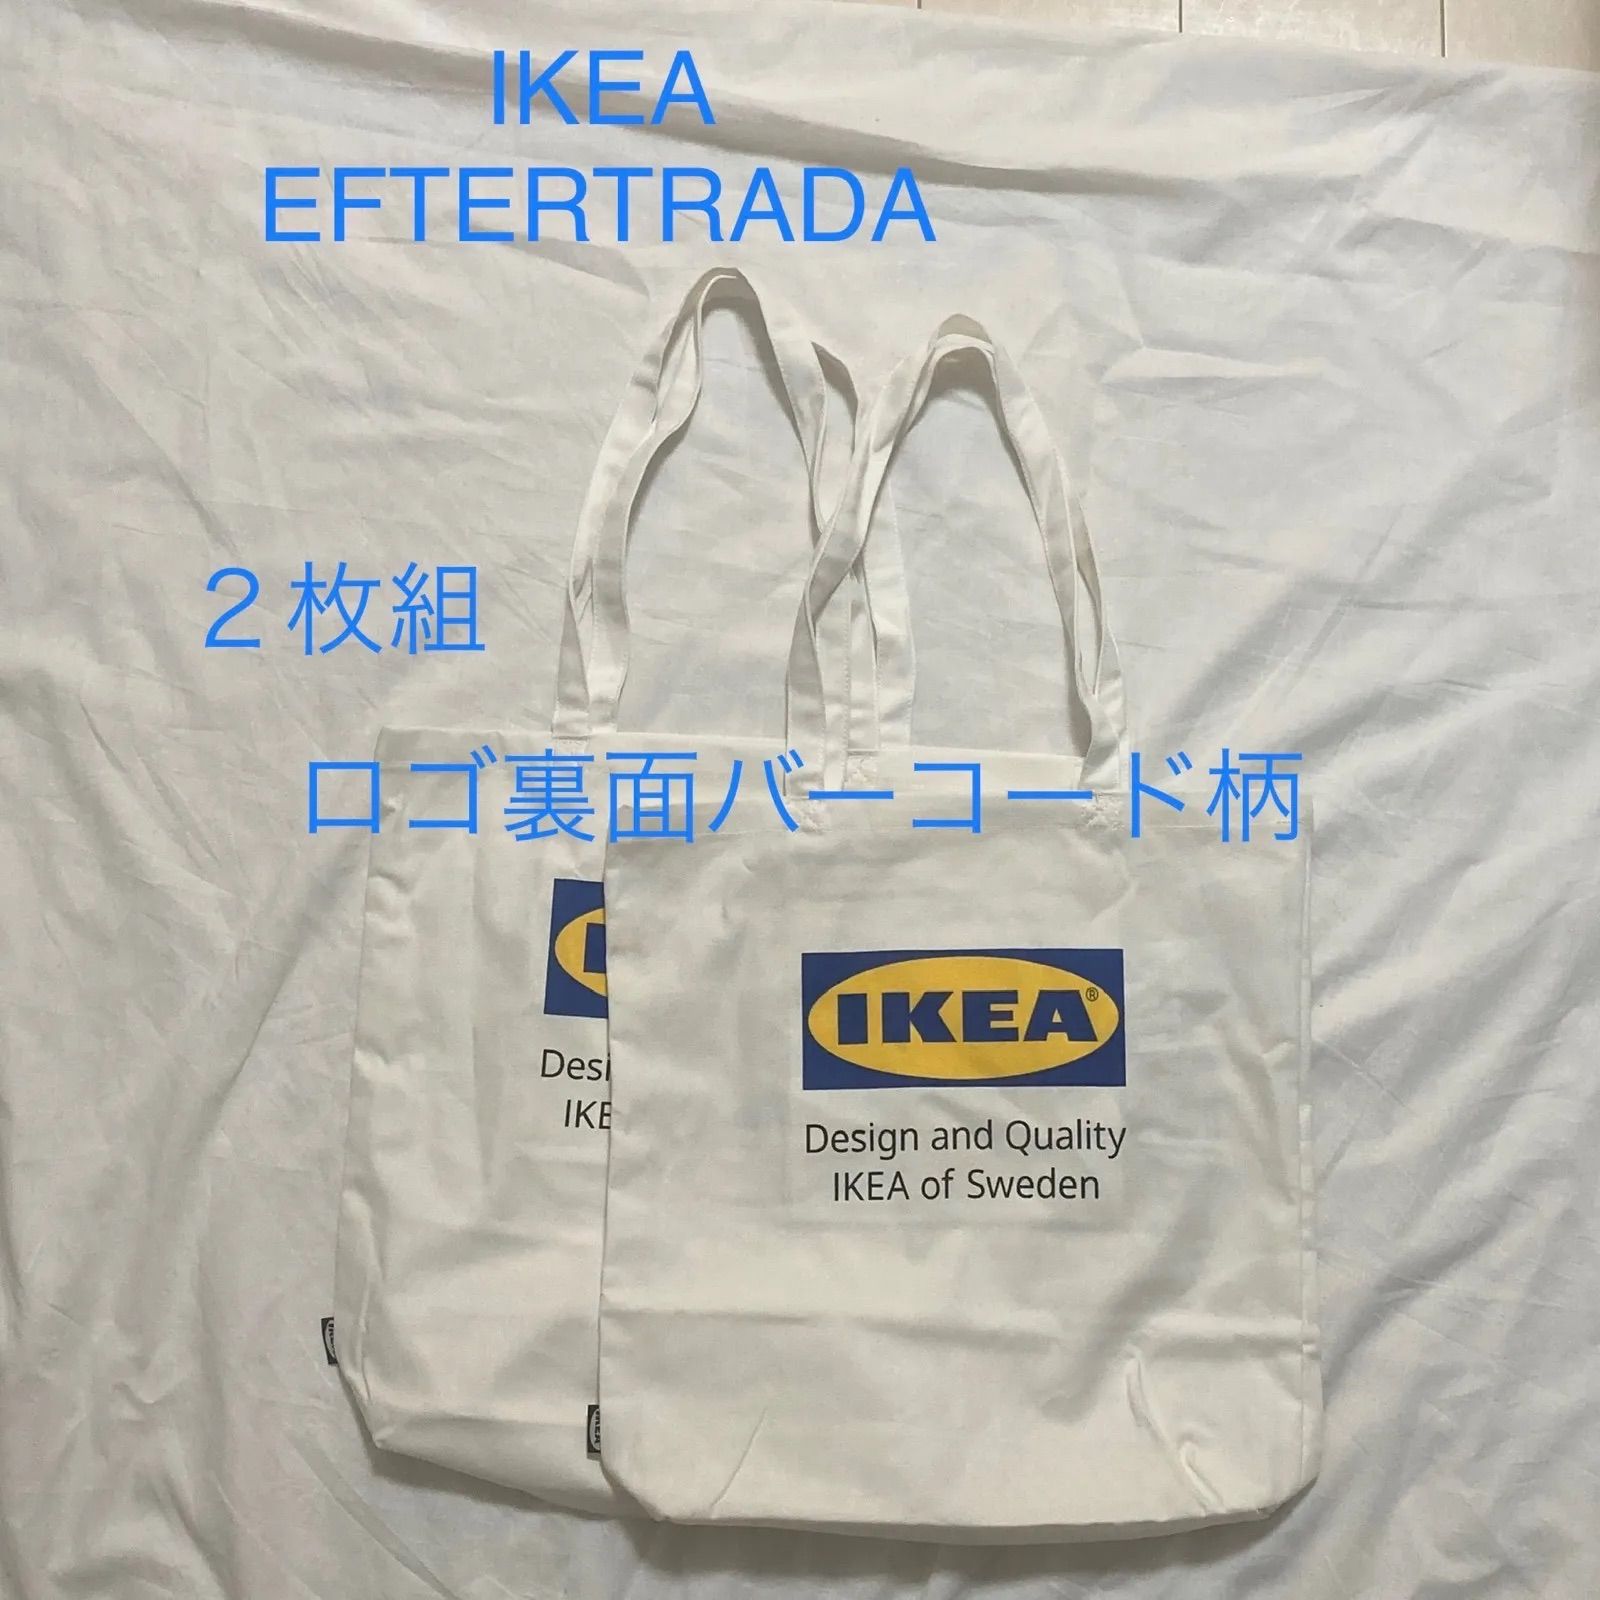 IKEA EFTERTRÄDA イケア エフテルトレーダ タオルハンカチ 2枚 通販